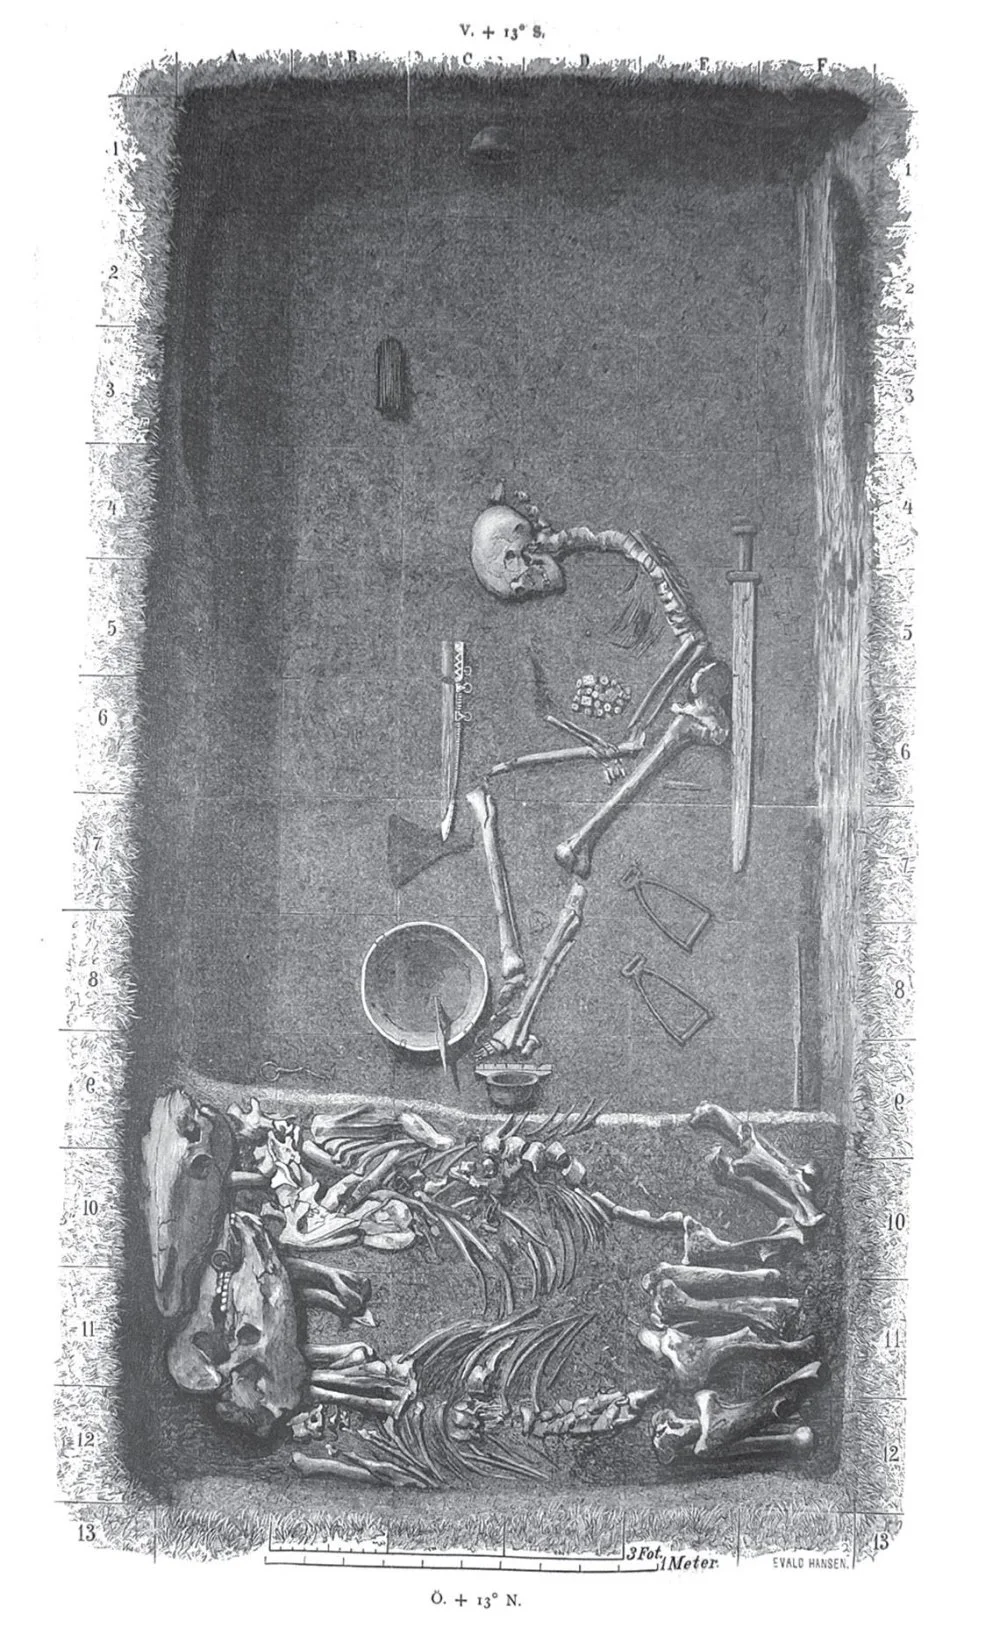 Воительница из Бирки. Эскиз археологической раскопки Bj 581, найденной Хьялмаром Столпе в Бирке, Швеция. Опубликован в 1889 году/Wikimedia Commons